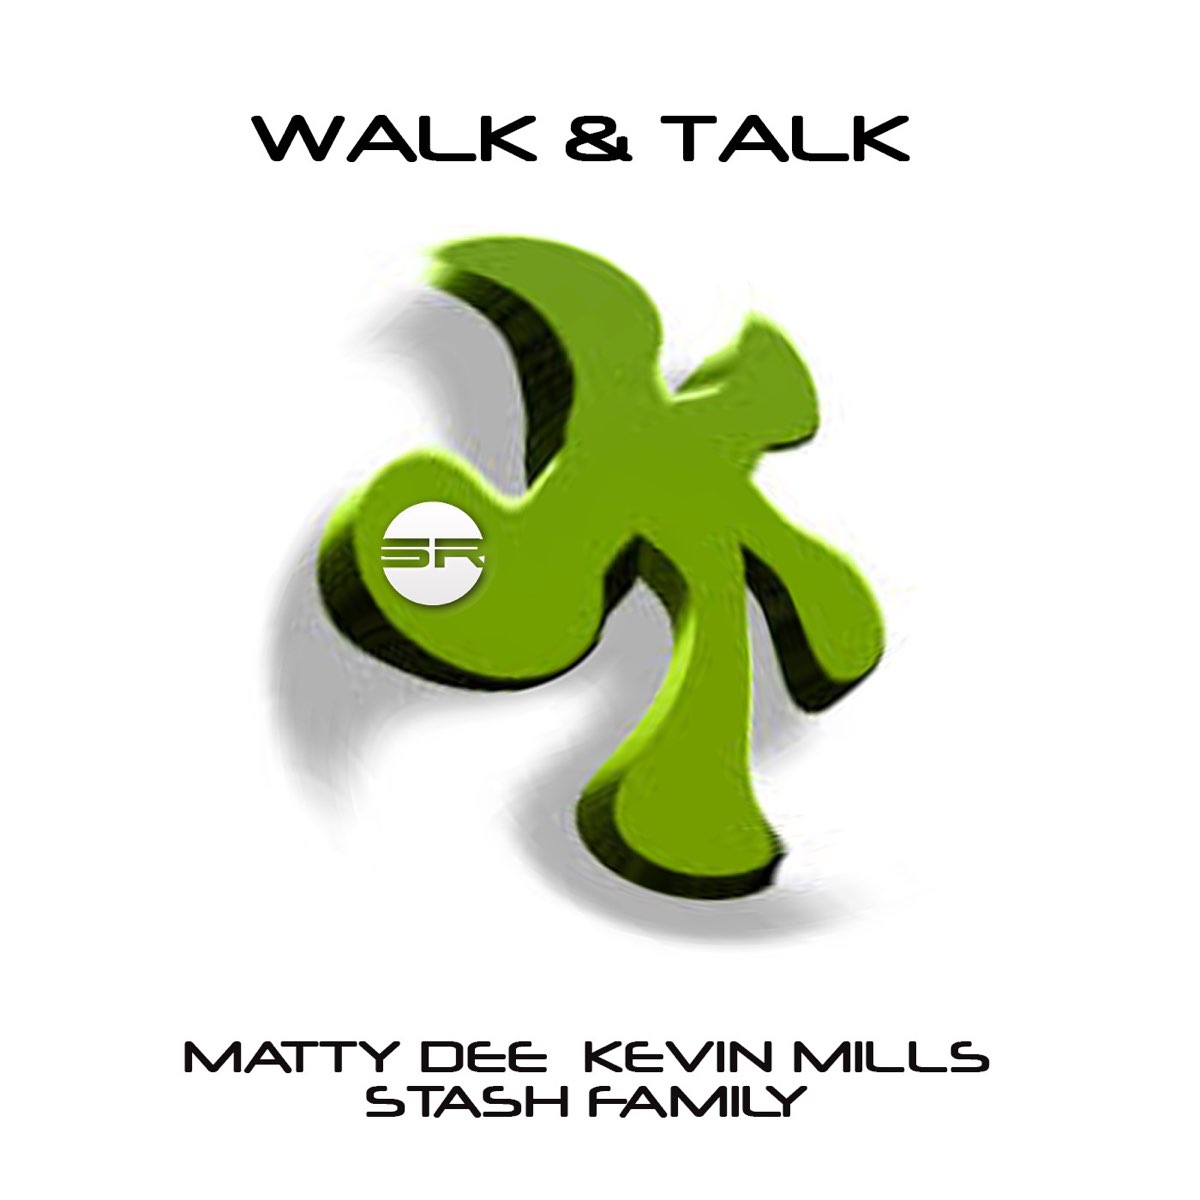 Walk talk ютуб. Walk talk. Walk the talk Графика. Walk & talk by.